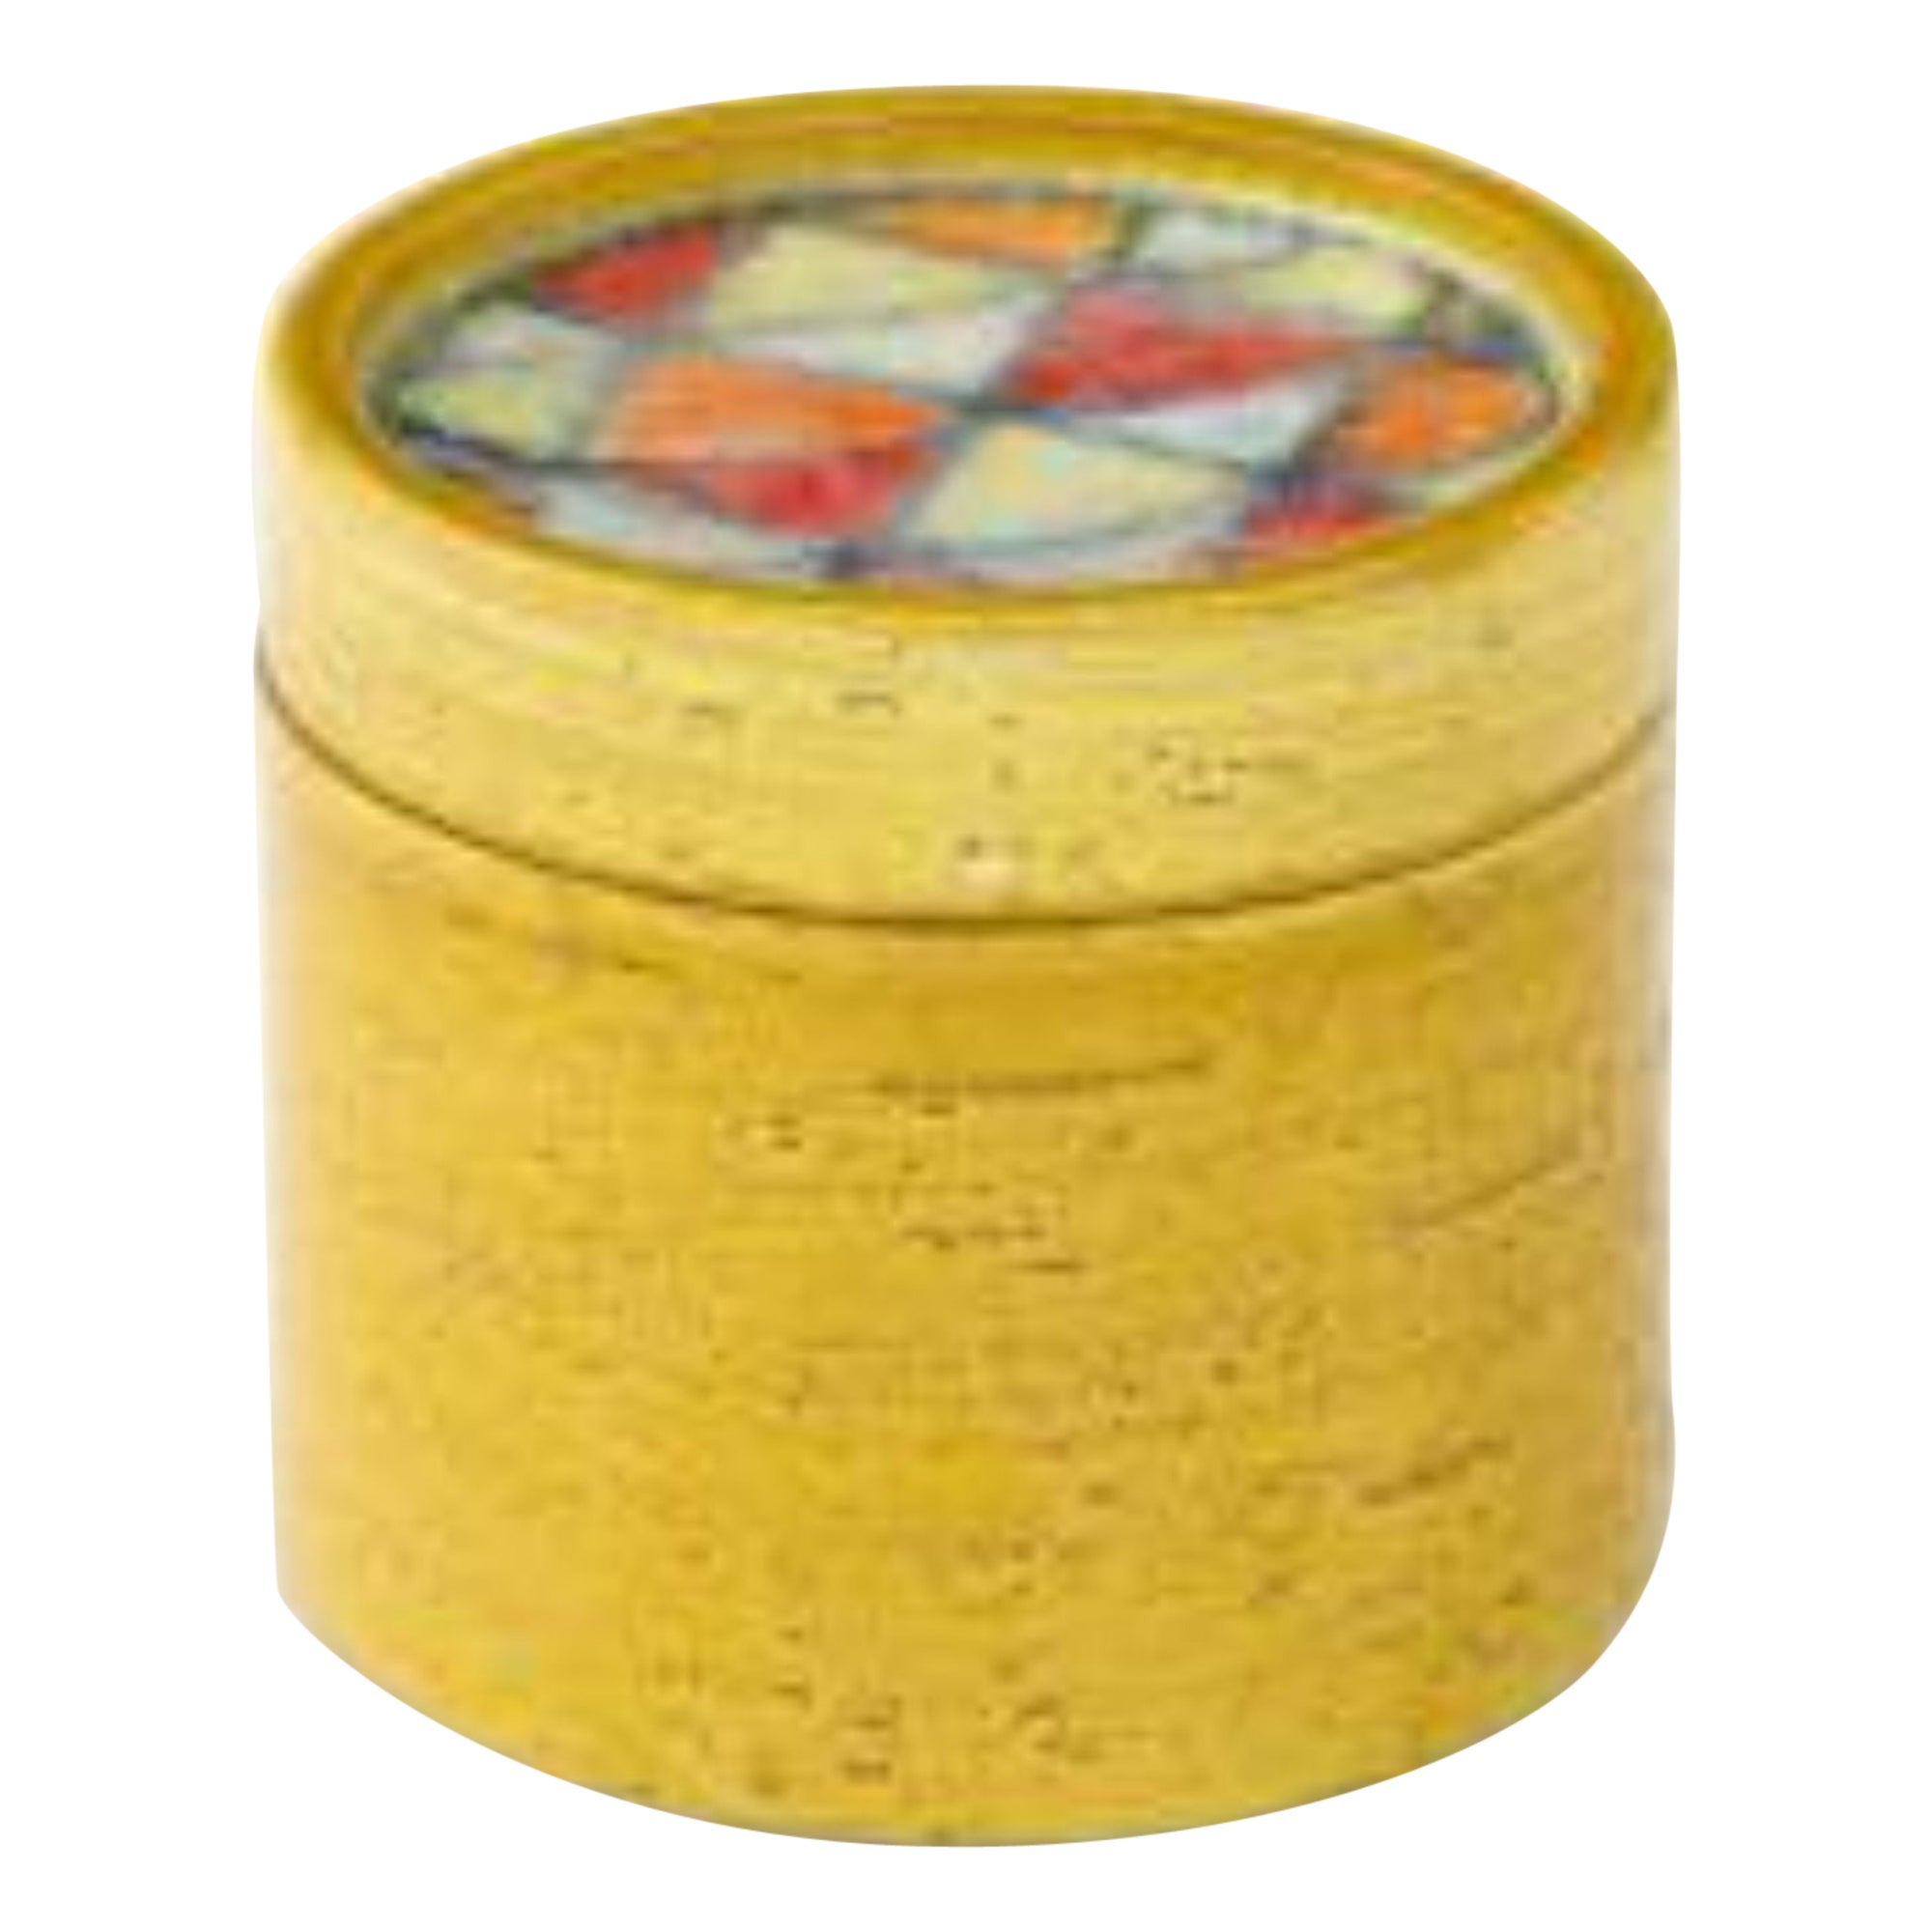 Bitossi-Schachtel mit Deckel aus glasierter Keramik und Mosaik aus Milchglas, ca. 1960er Jahre